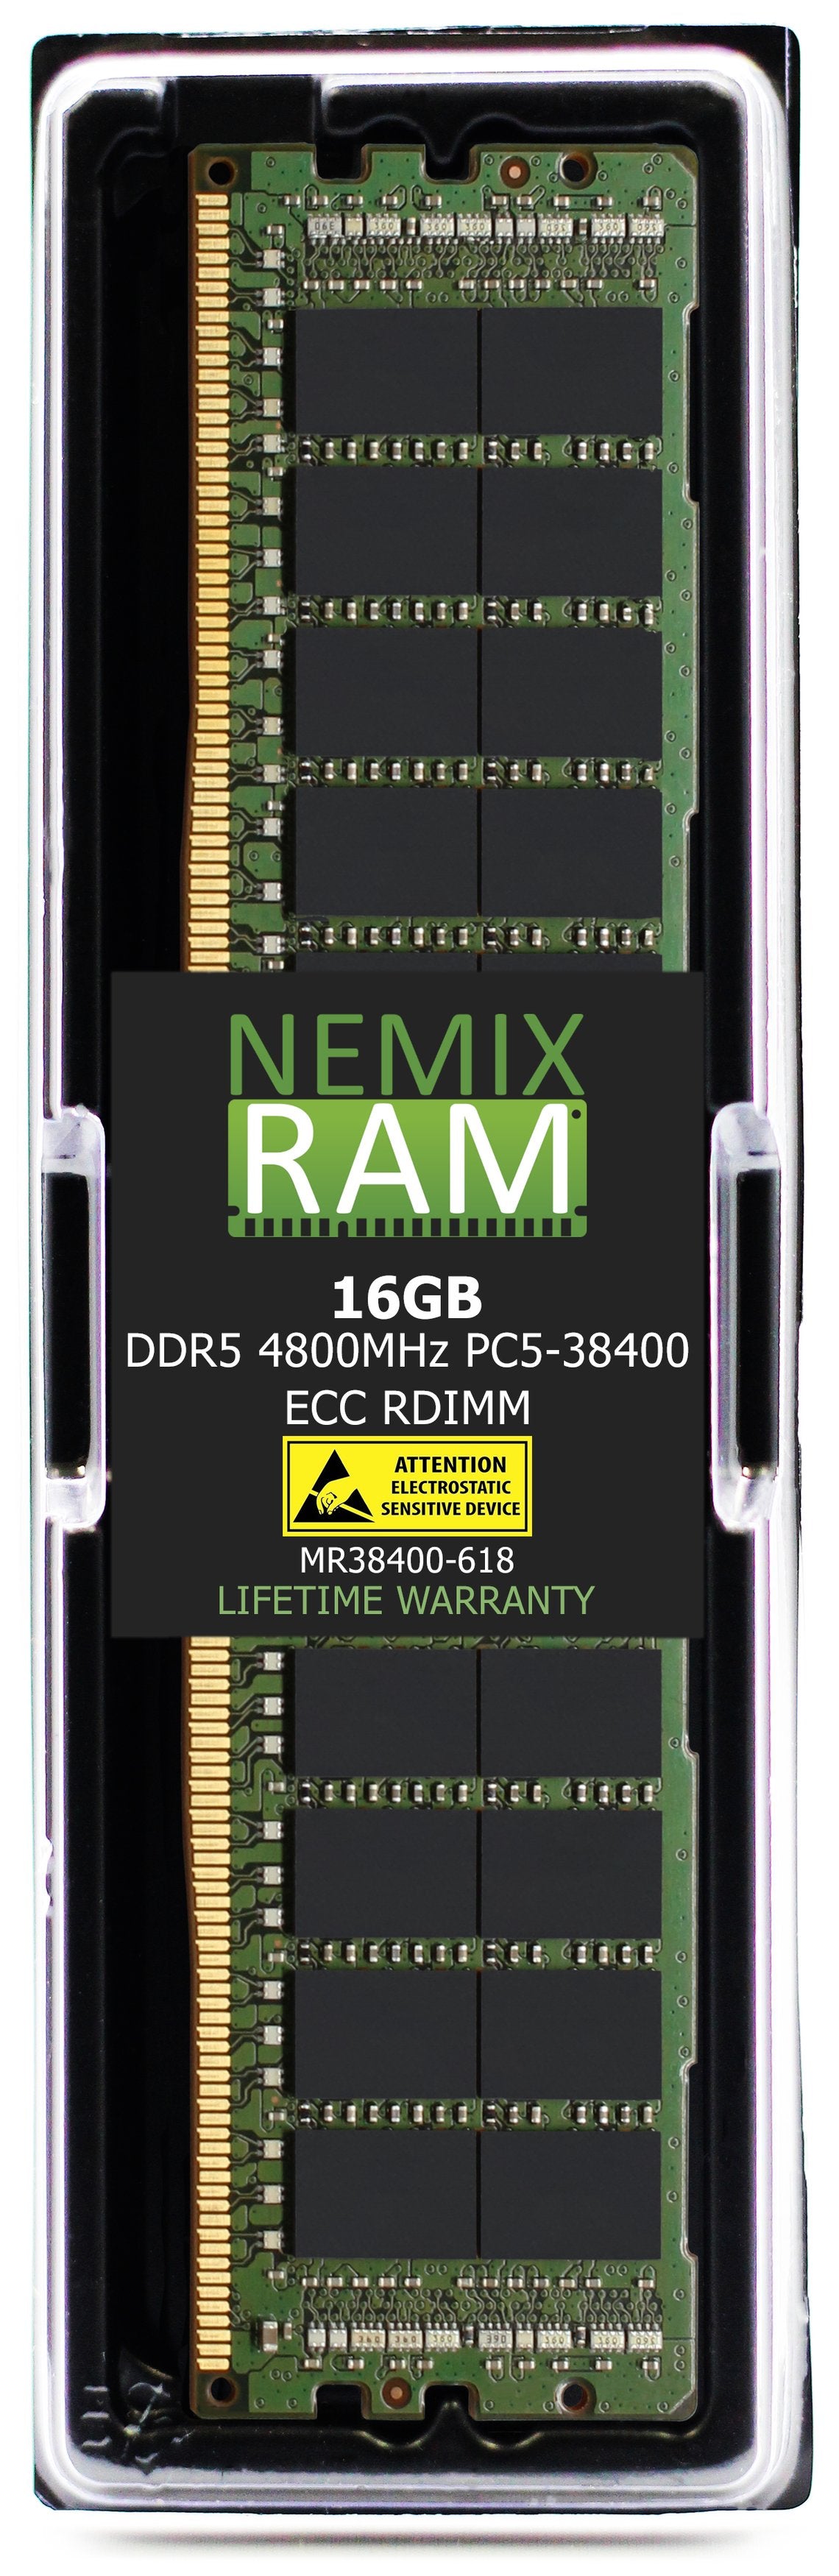 DELL PowerEdge R760xa Rack Server Memory Upgrade